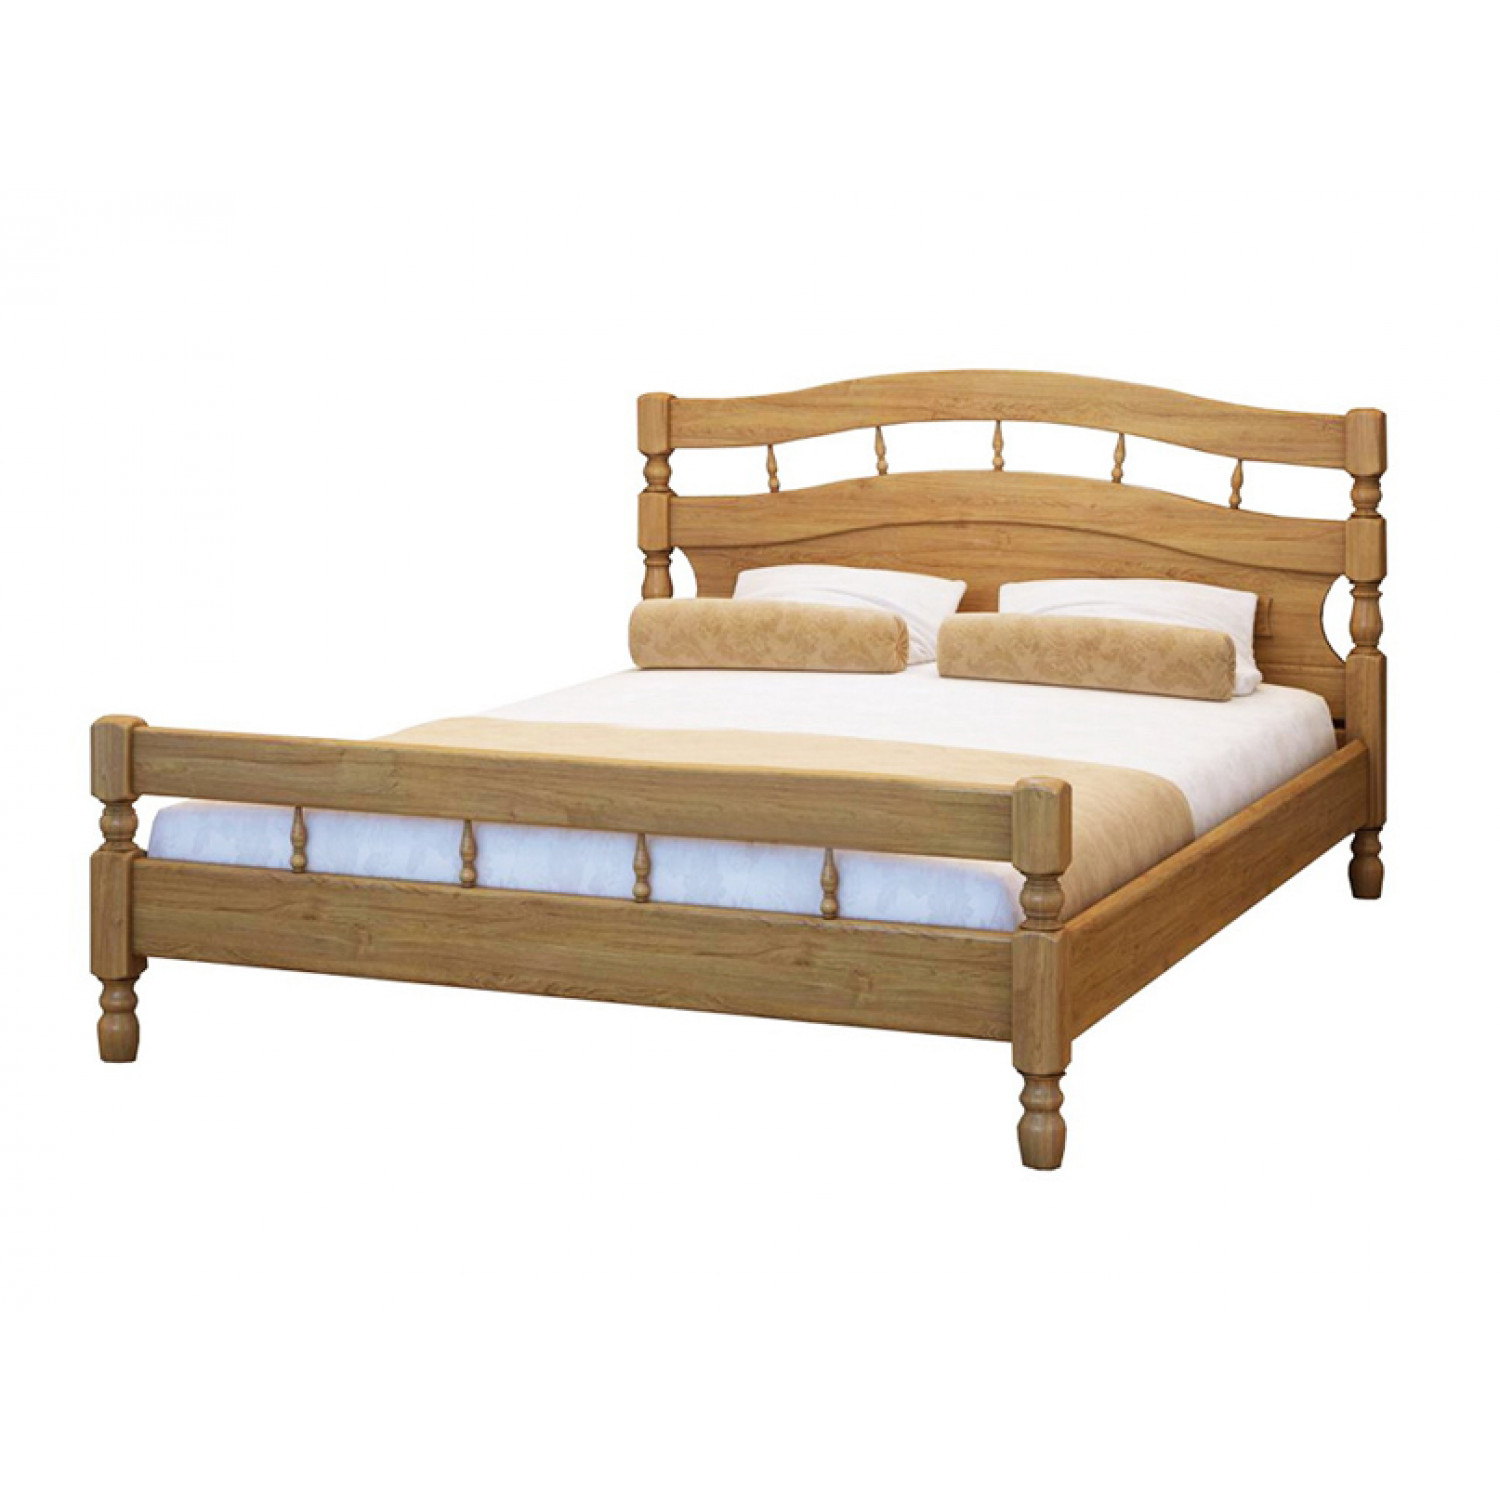 Купить деревянную кровать недорого. Кровать Марибель одинарная из массива березы. Кровать Фабриано 301 массив сосны. Кровать Fiona Accent Wood.